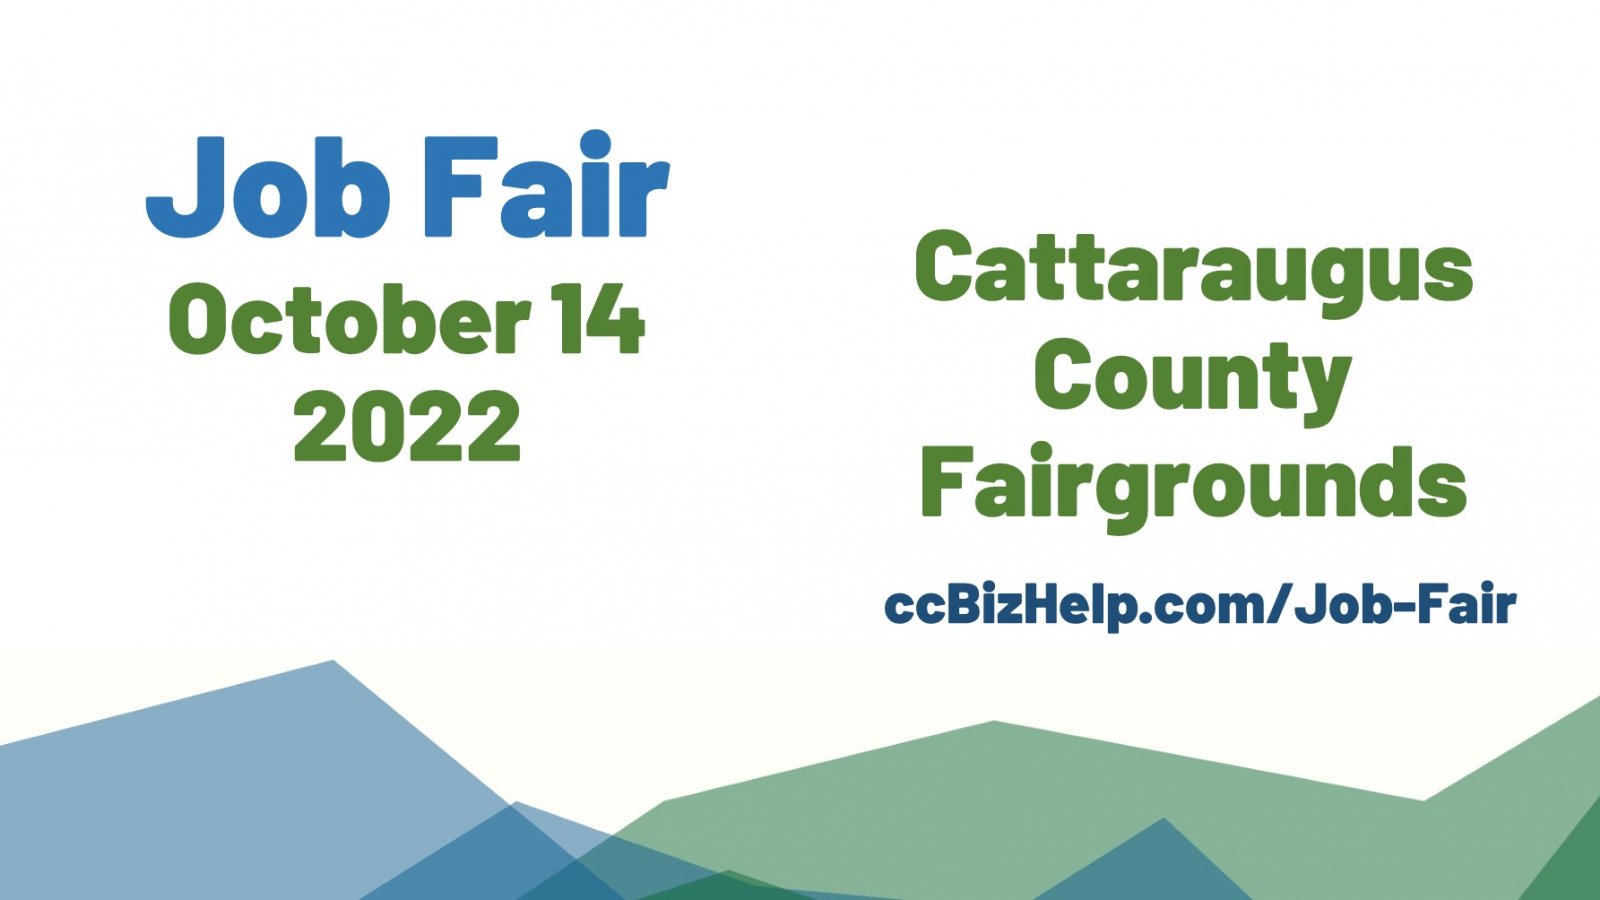 Job Fair October 14, 2022 at the Cattaraugus County Fairgrounds